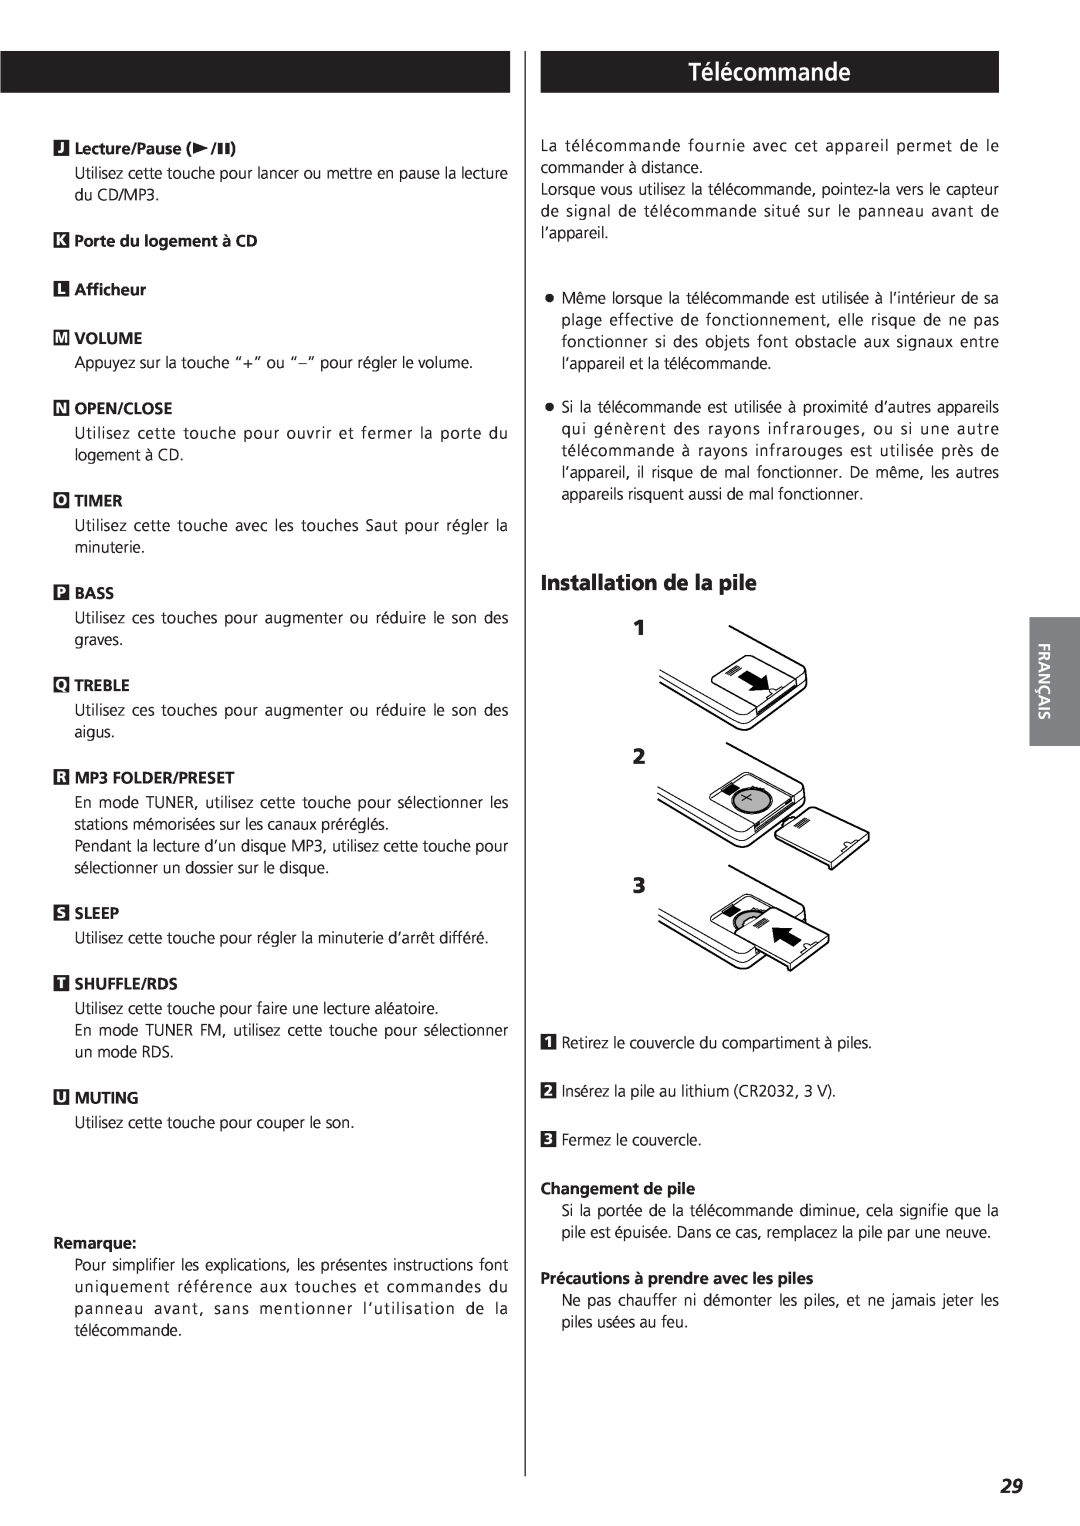 Teac MC-DX20 owner manual Télécommande, Installation de la pile 2, Français 